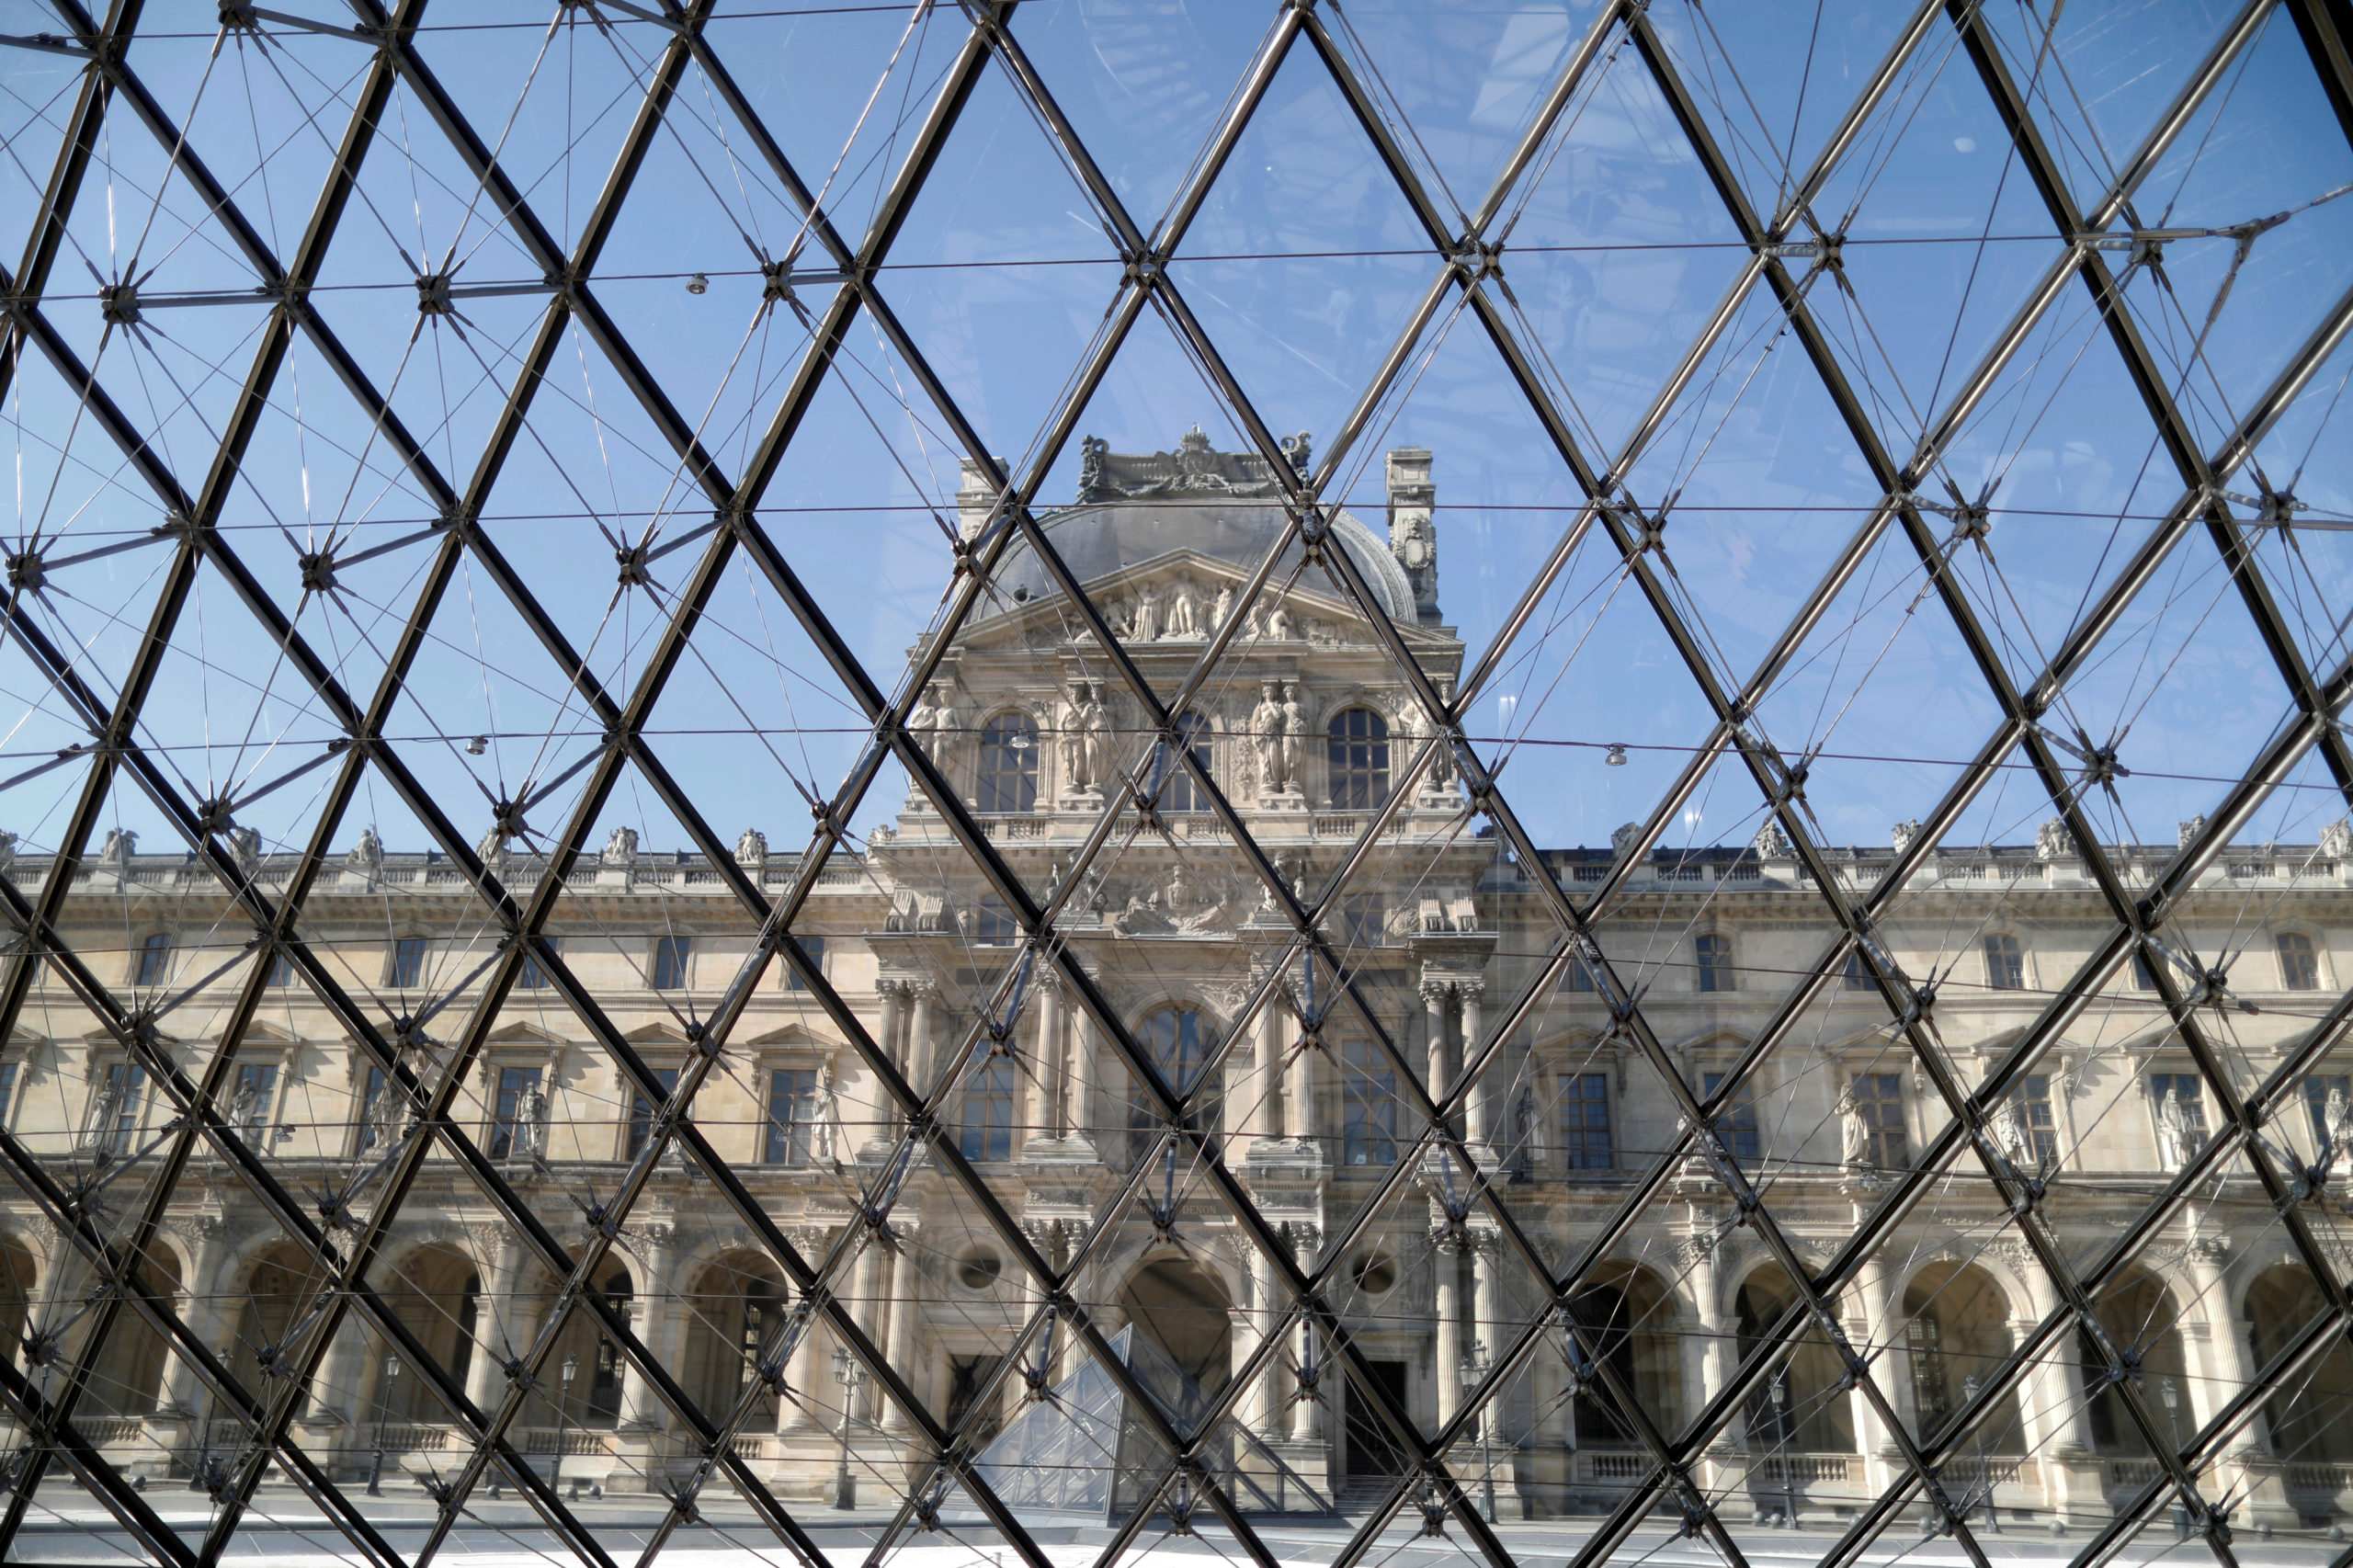 Le vaisseau Louvre rouvre au public selon un rigoureux protocole